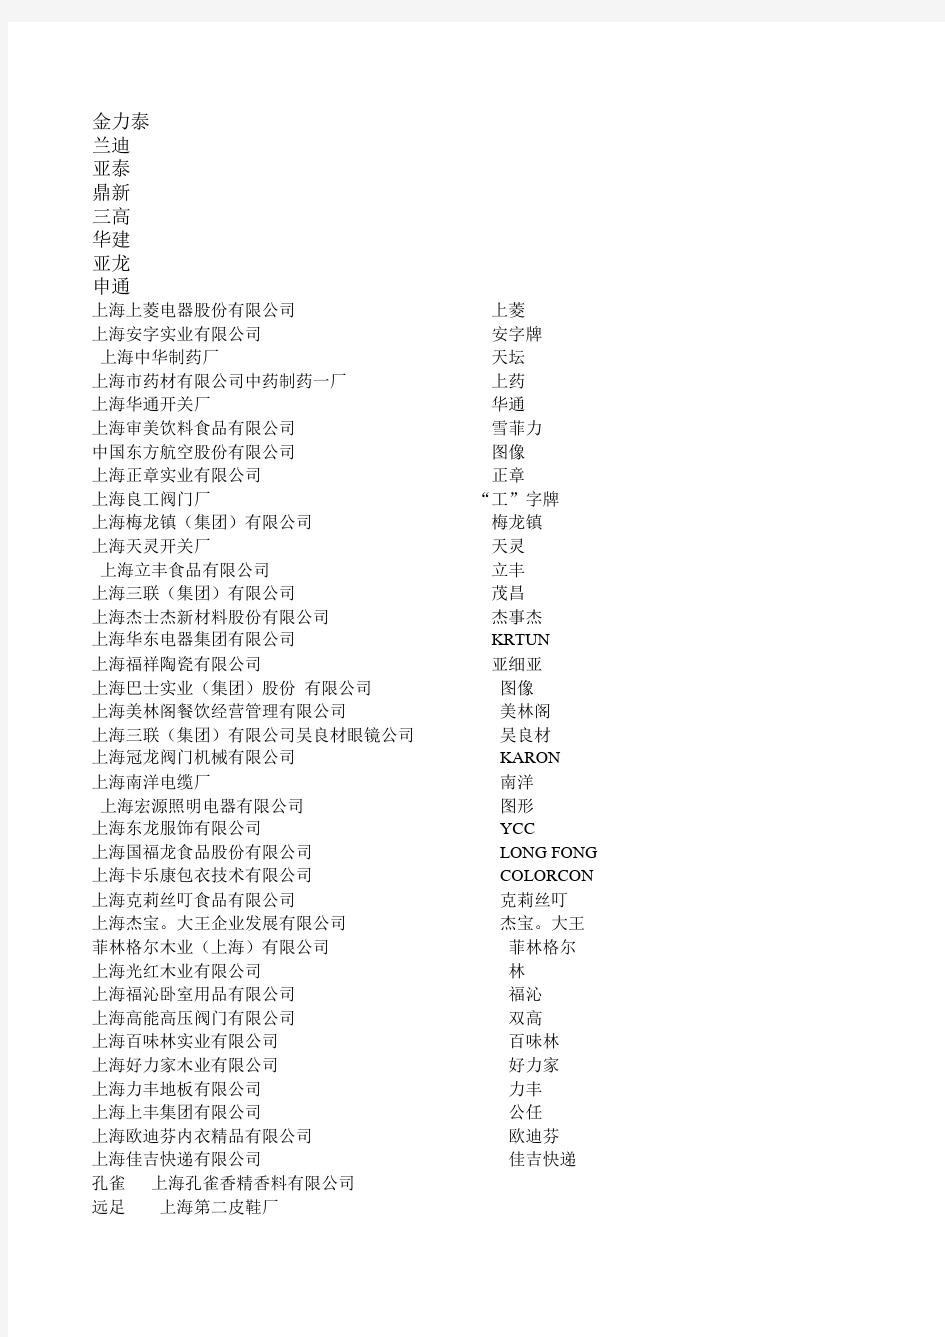 上海市著名商标企业名单